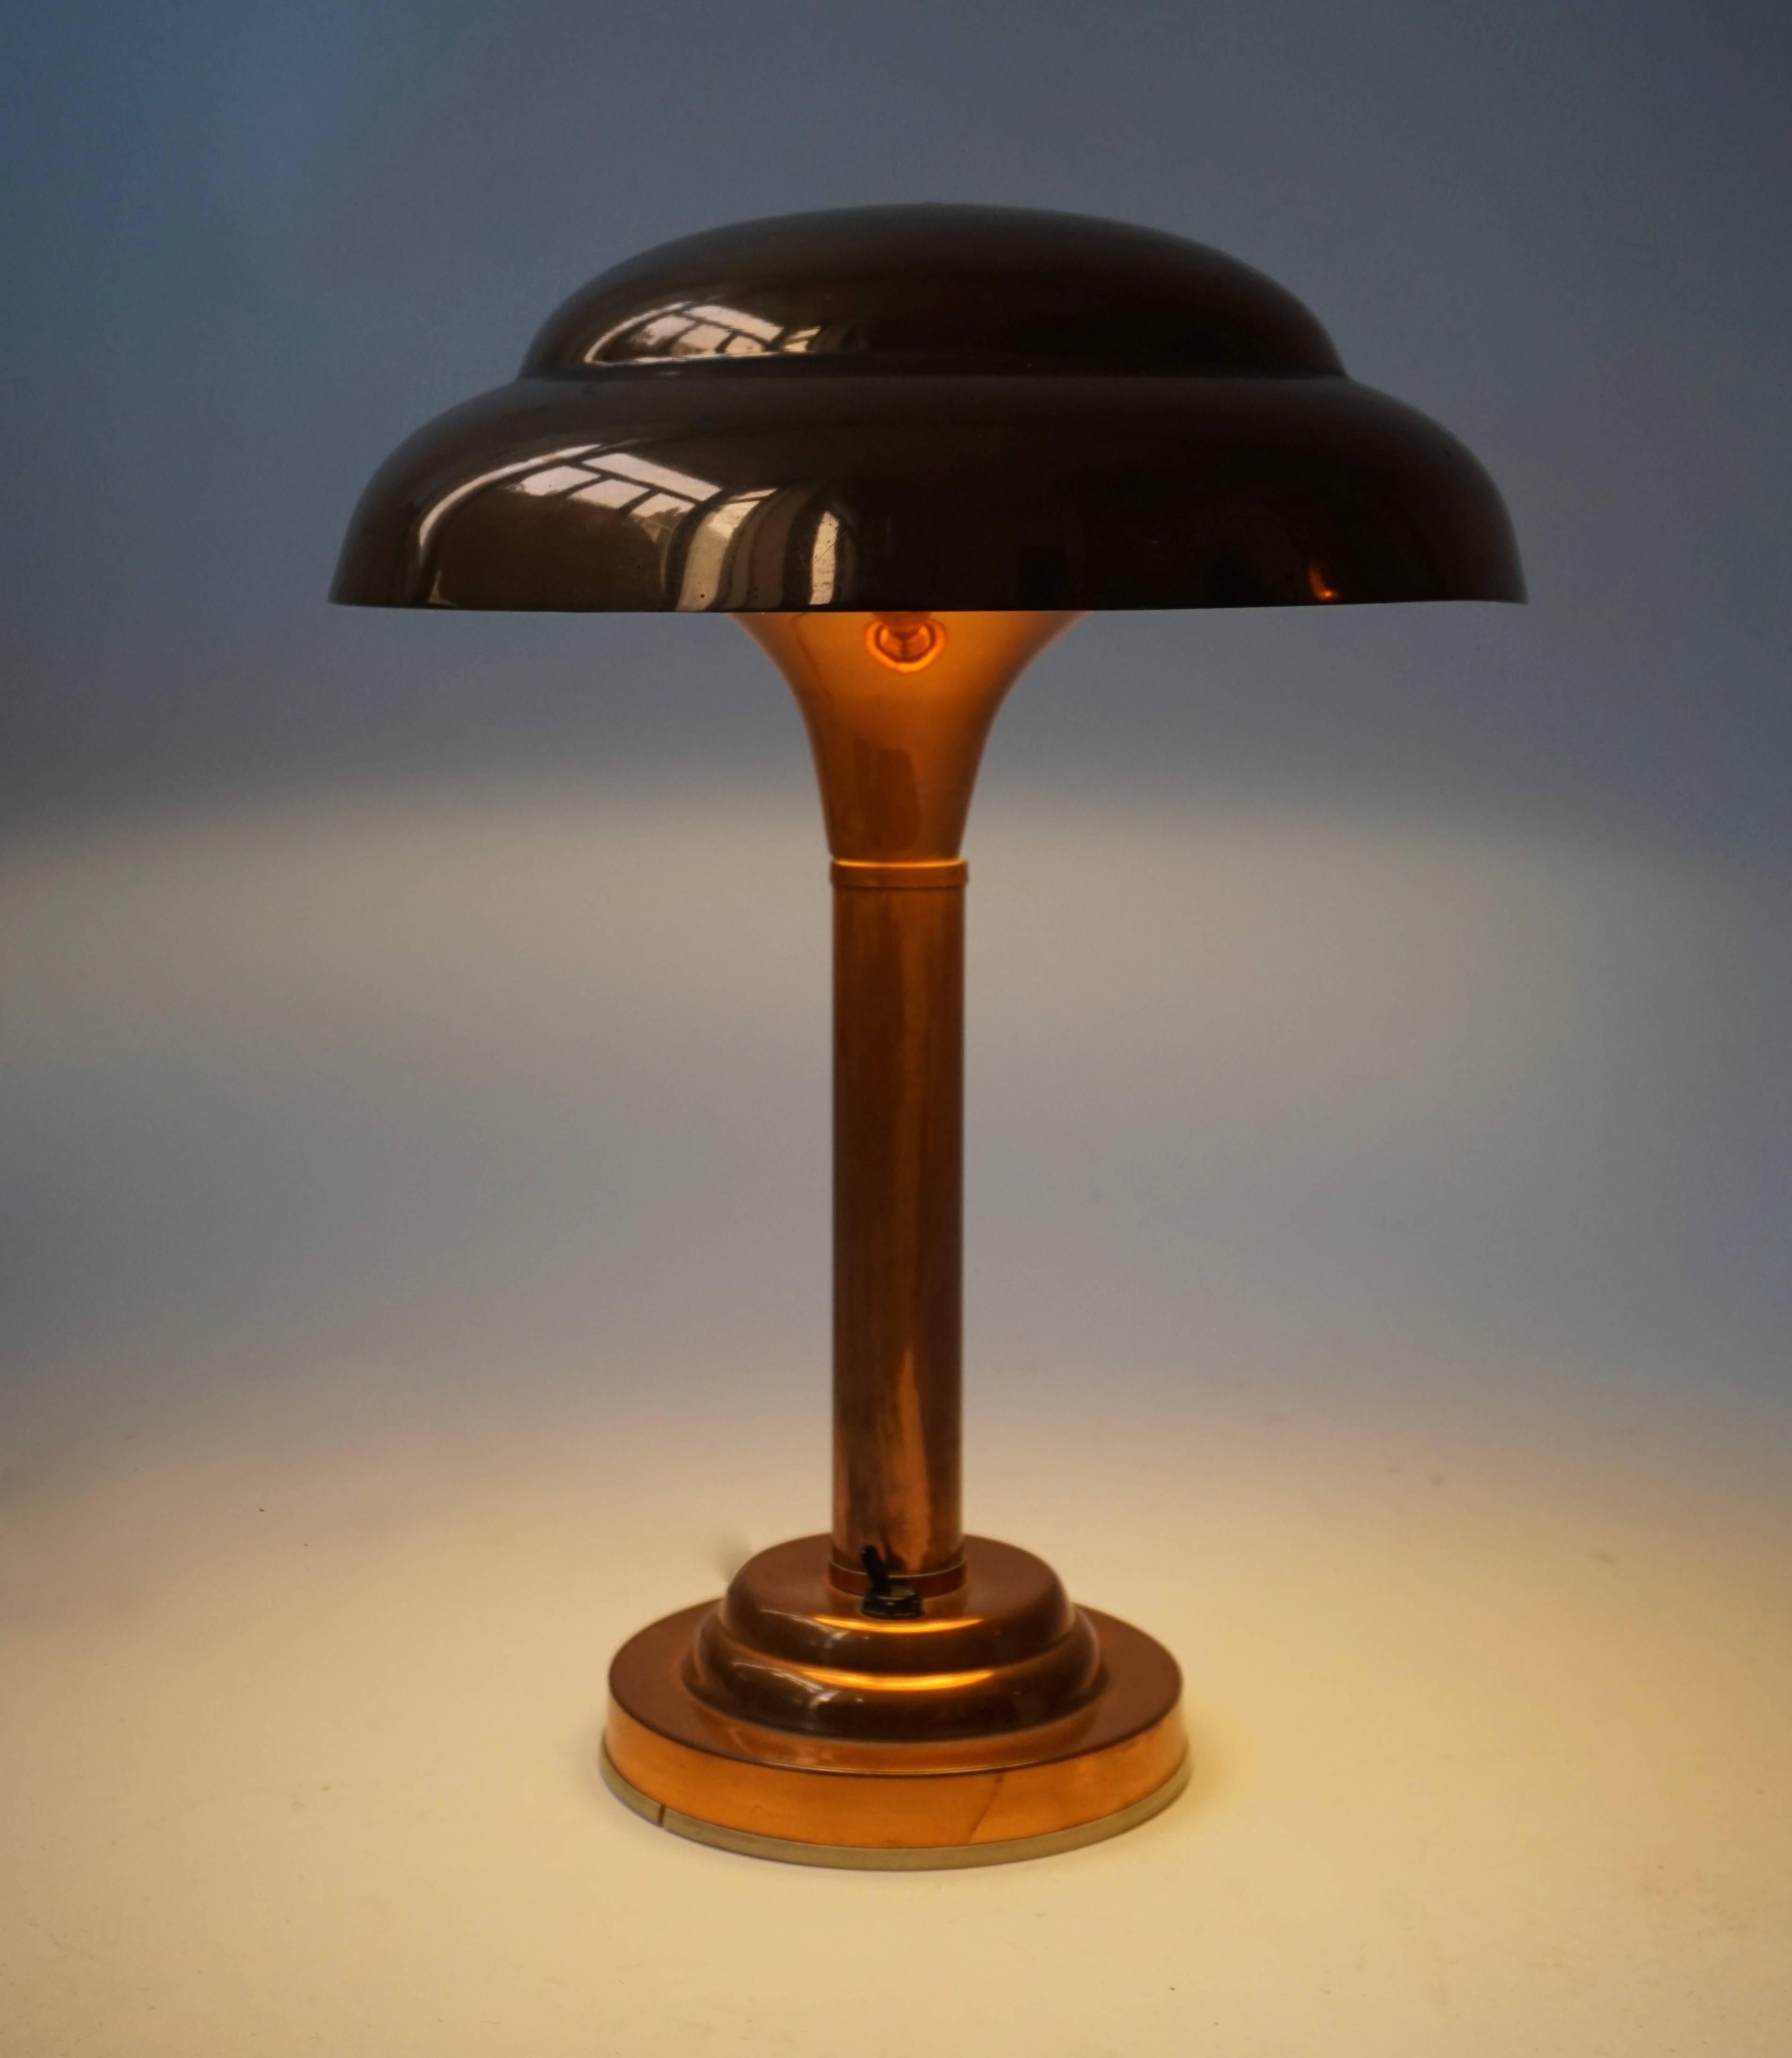 Lampe de table Art Déco en cuivre.
Mesures : Diamètre 29 cm.
Hauteur 39 cm.